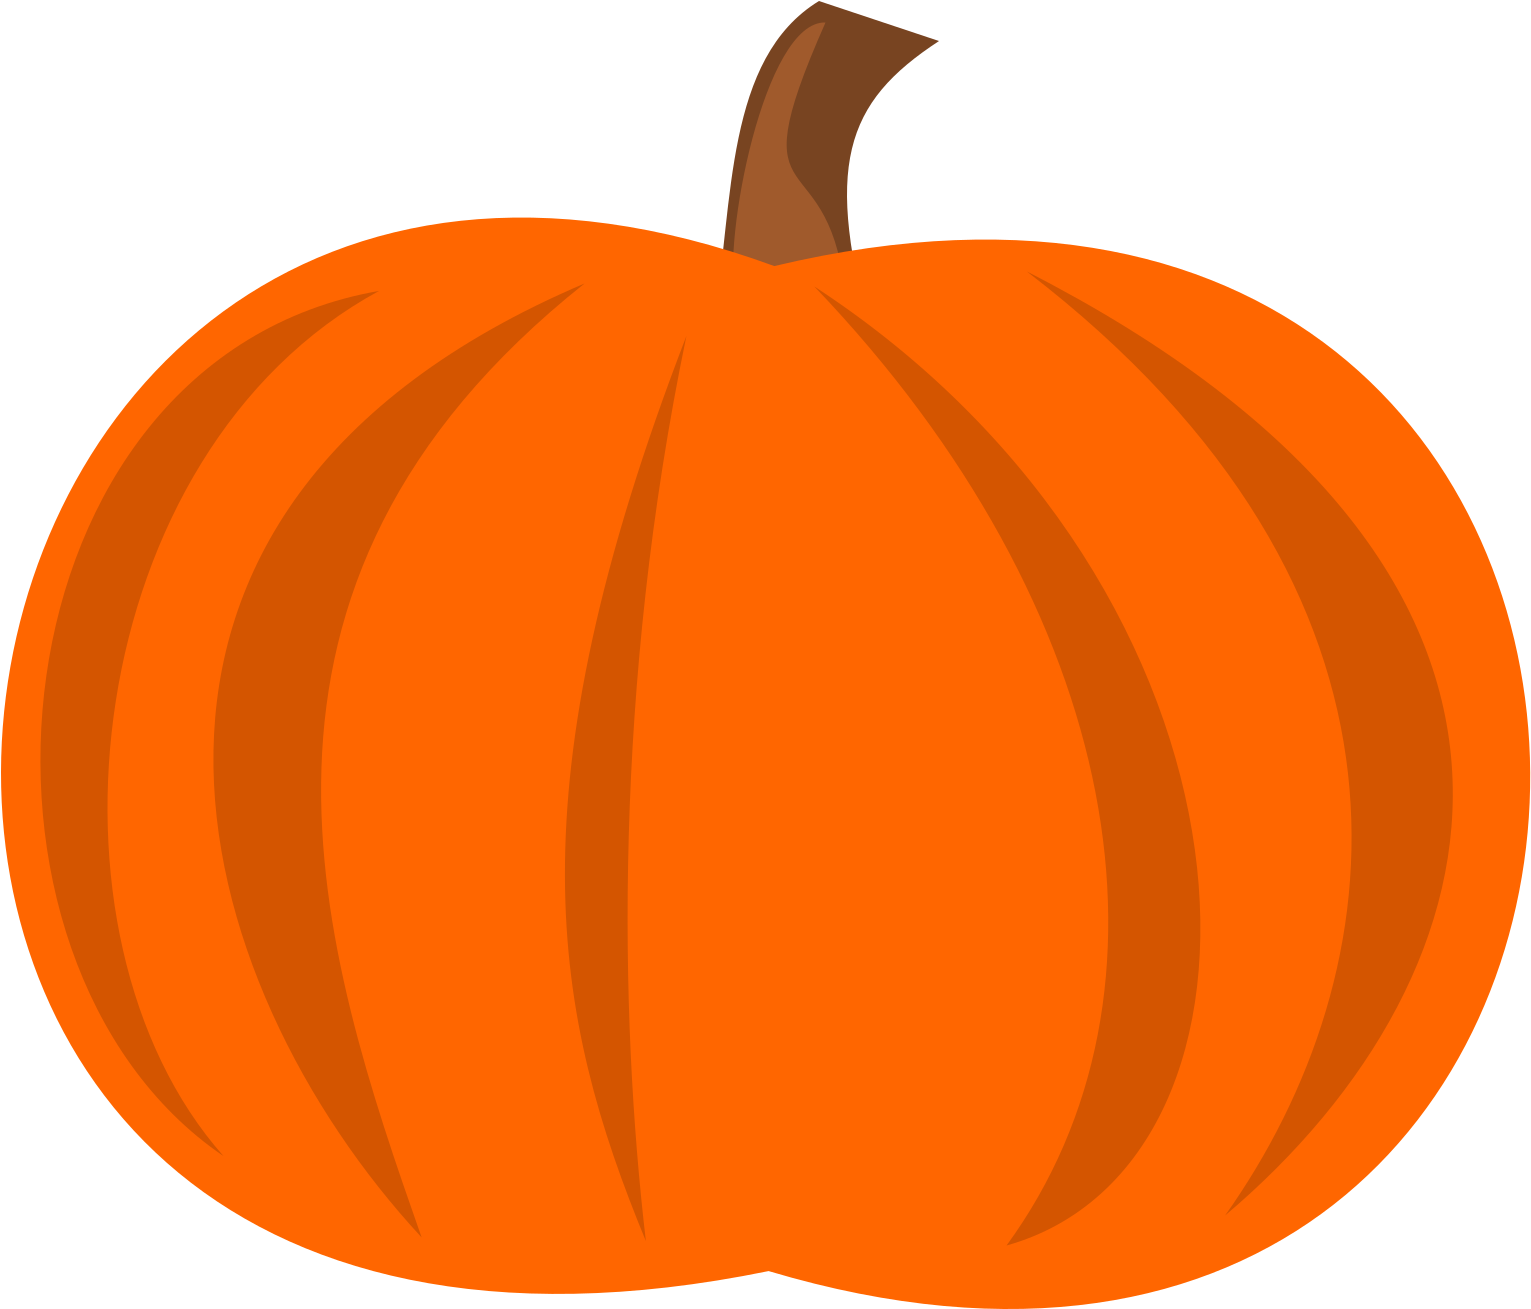 Pumpkin Cartoon Clip Art - Pumpkin Vector.